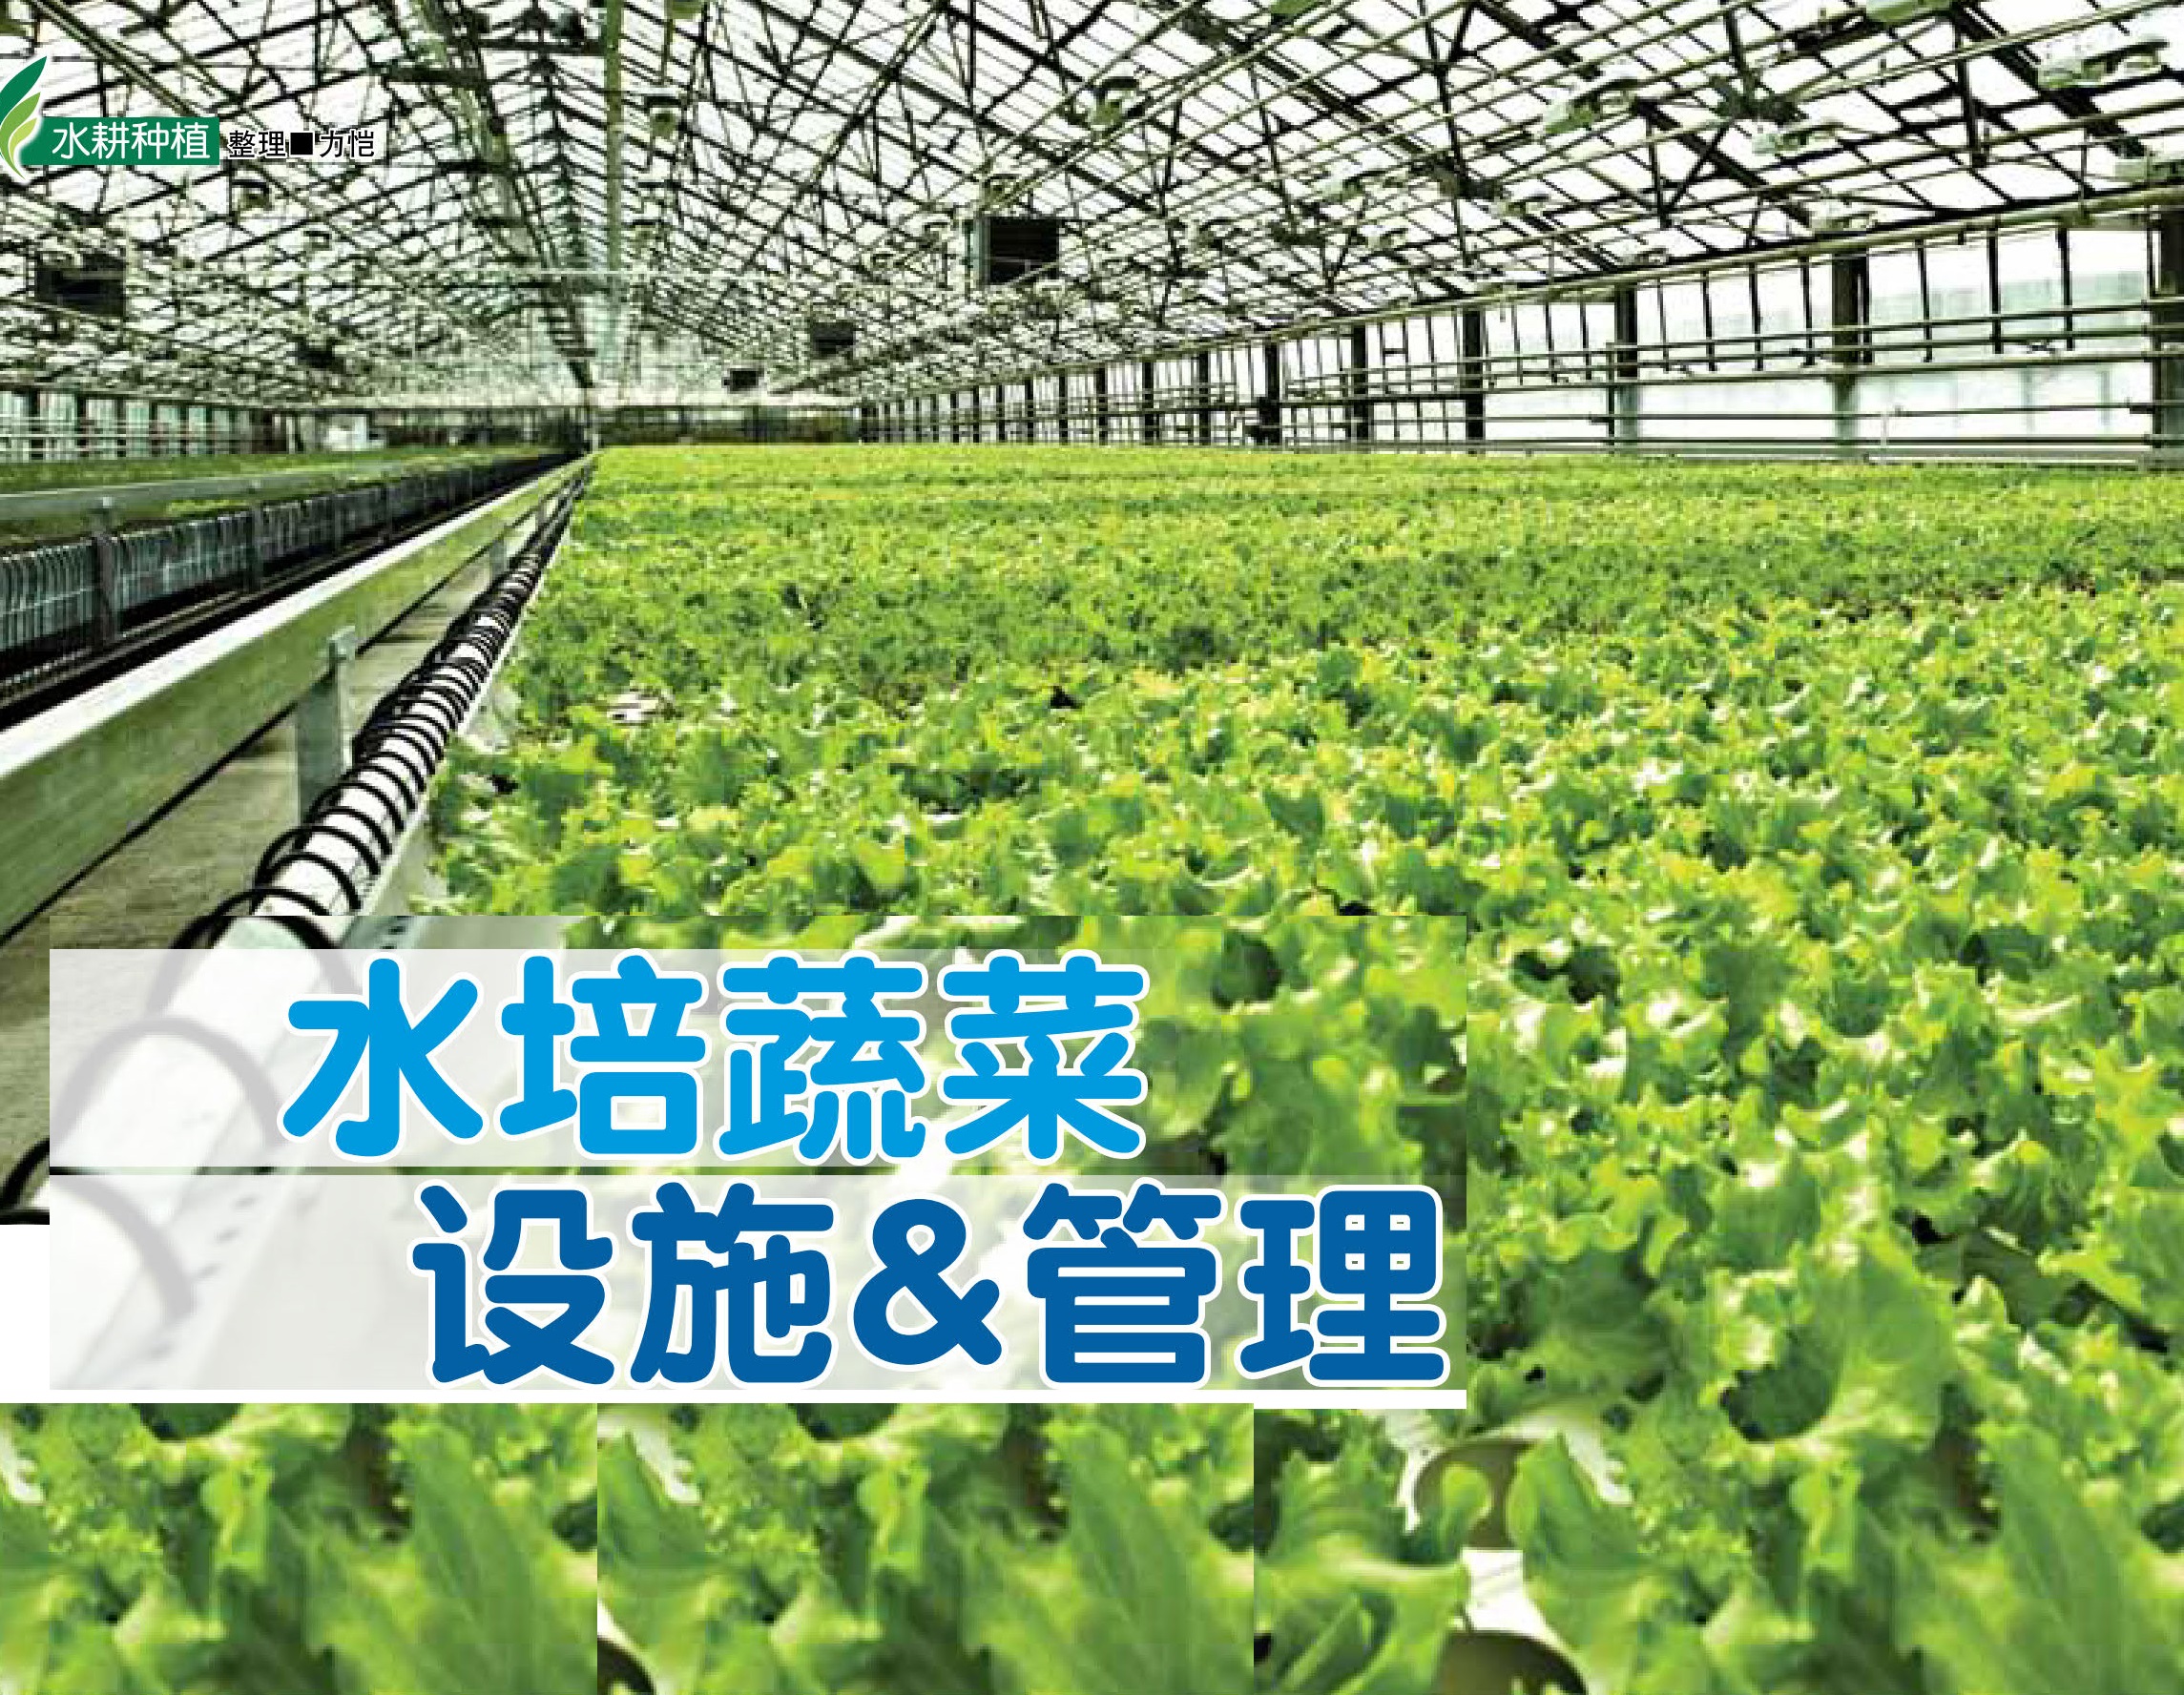 水培蔬菜 设施&管理 - 农牧世界